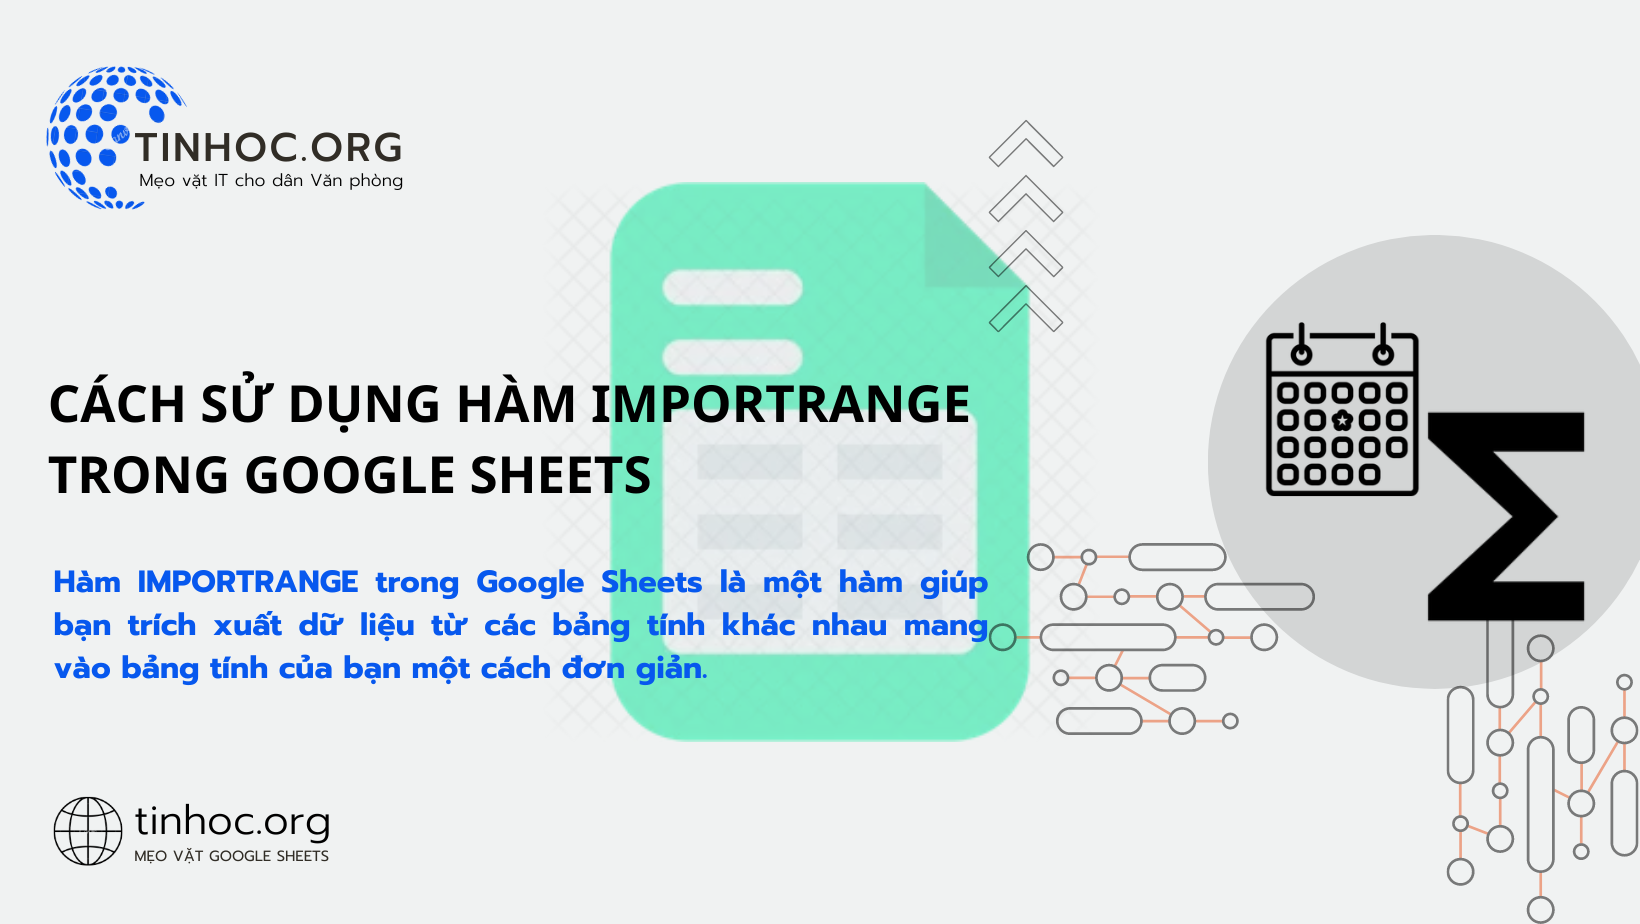 Hàm IMPORTRANGE trong Google Sheets là một hàm giúp bạn trích xuất dữ liệu từ các bảng tính khác nhau mang vào bảng tính của bạn một cách đơn giản.